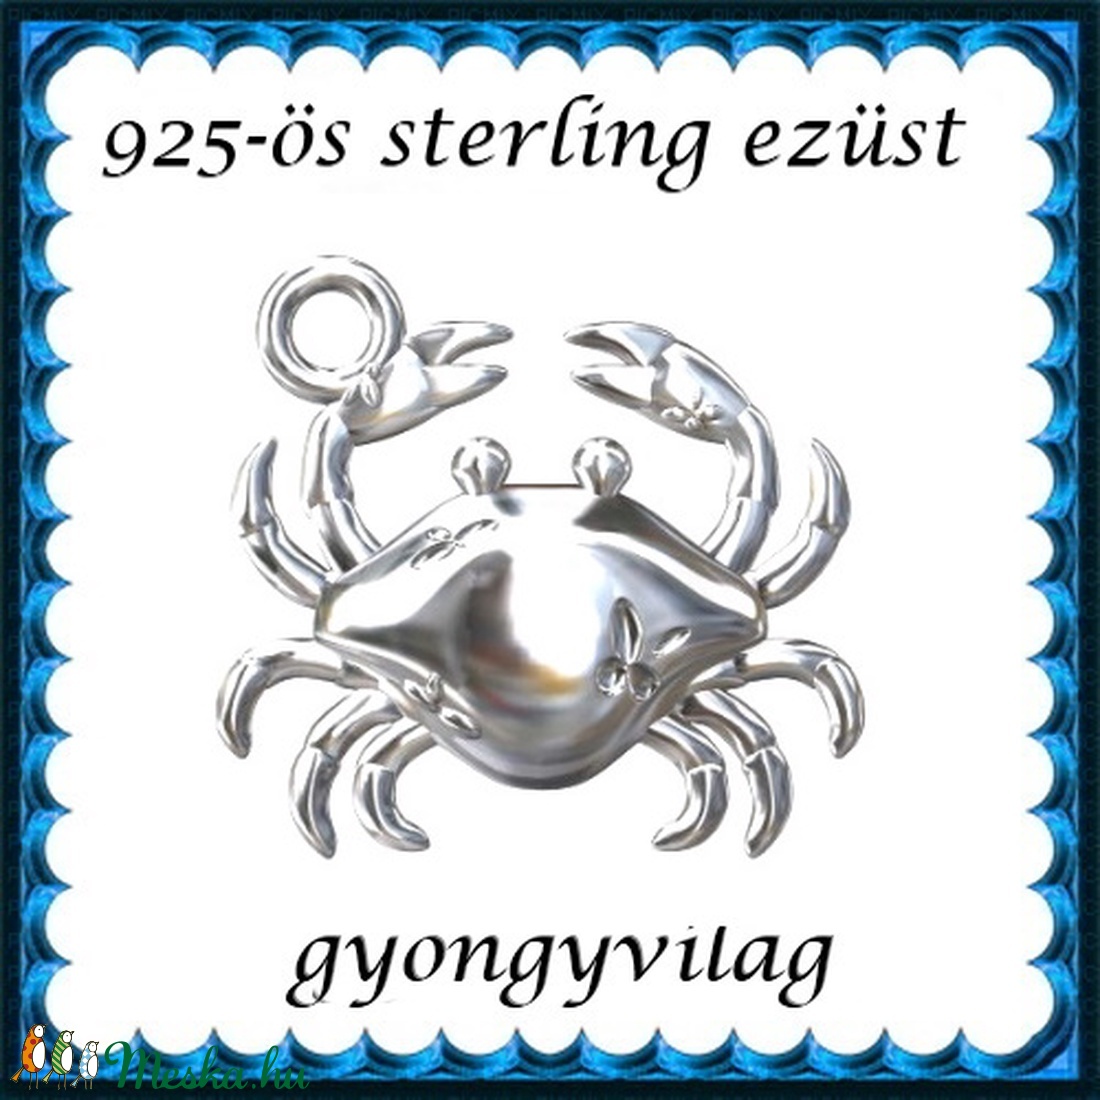 925-ös sterling ezüst ékszerkellék: medál / pandora / fityegő EM24 - gyöngy, ékszerkellék - fém köztesek - Meska.hu